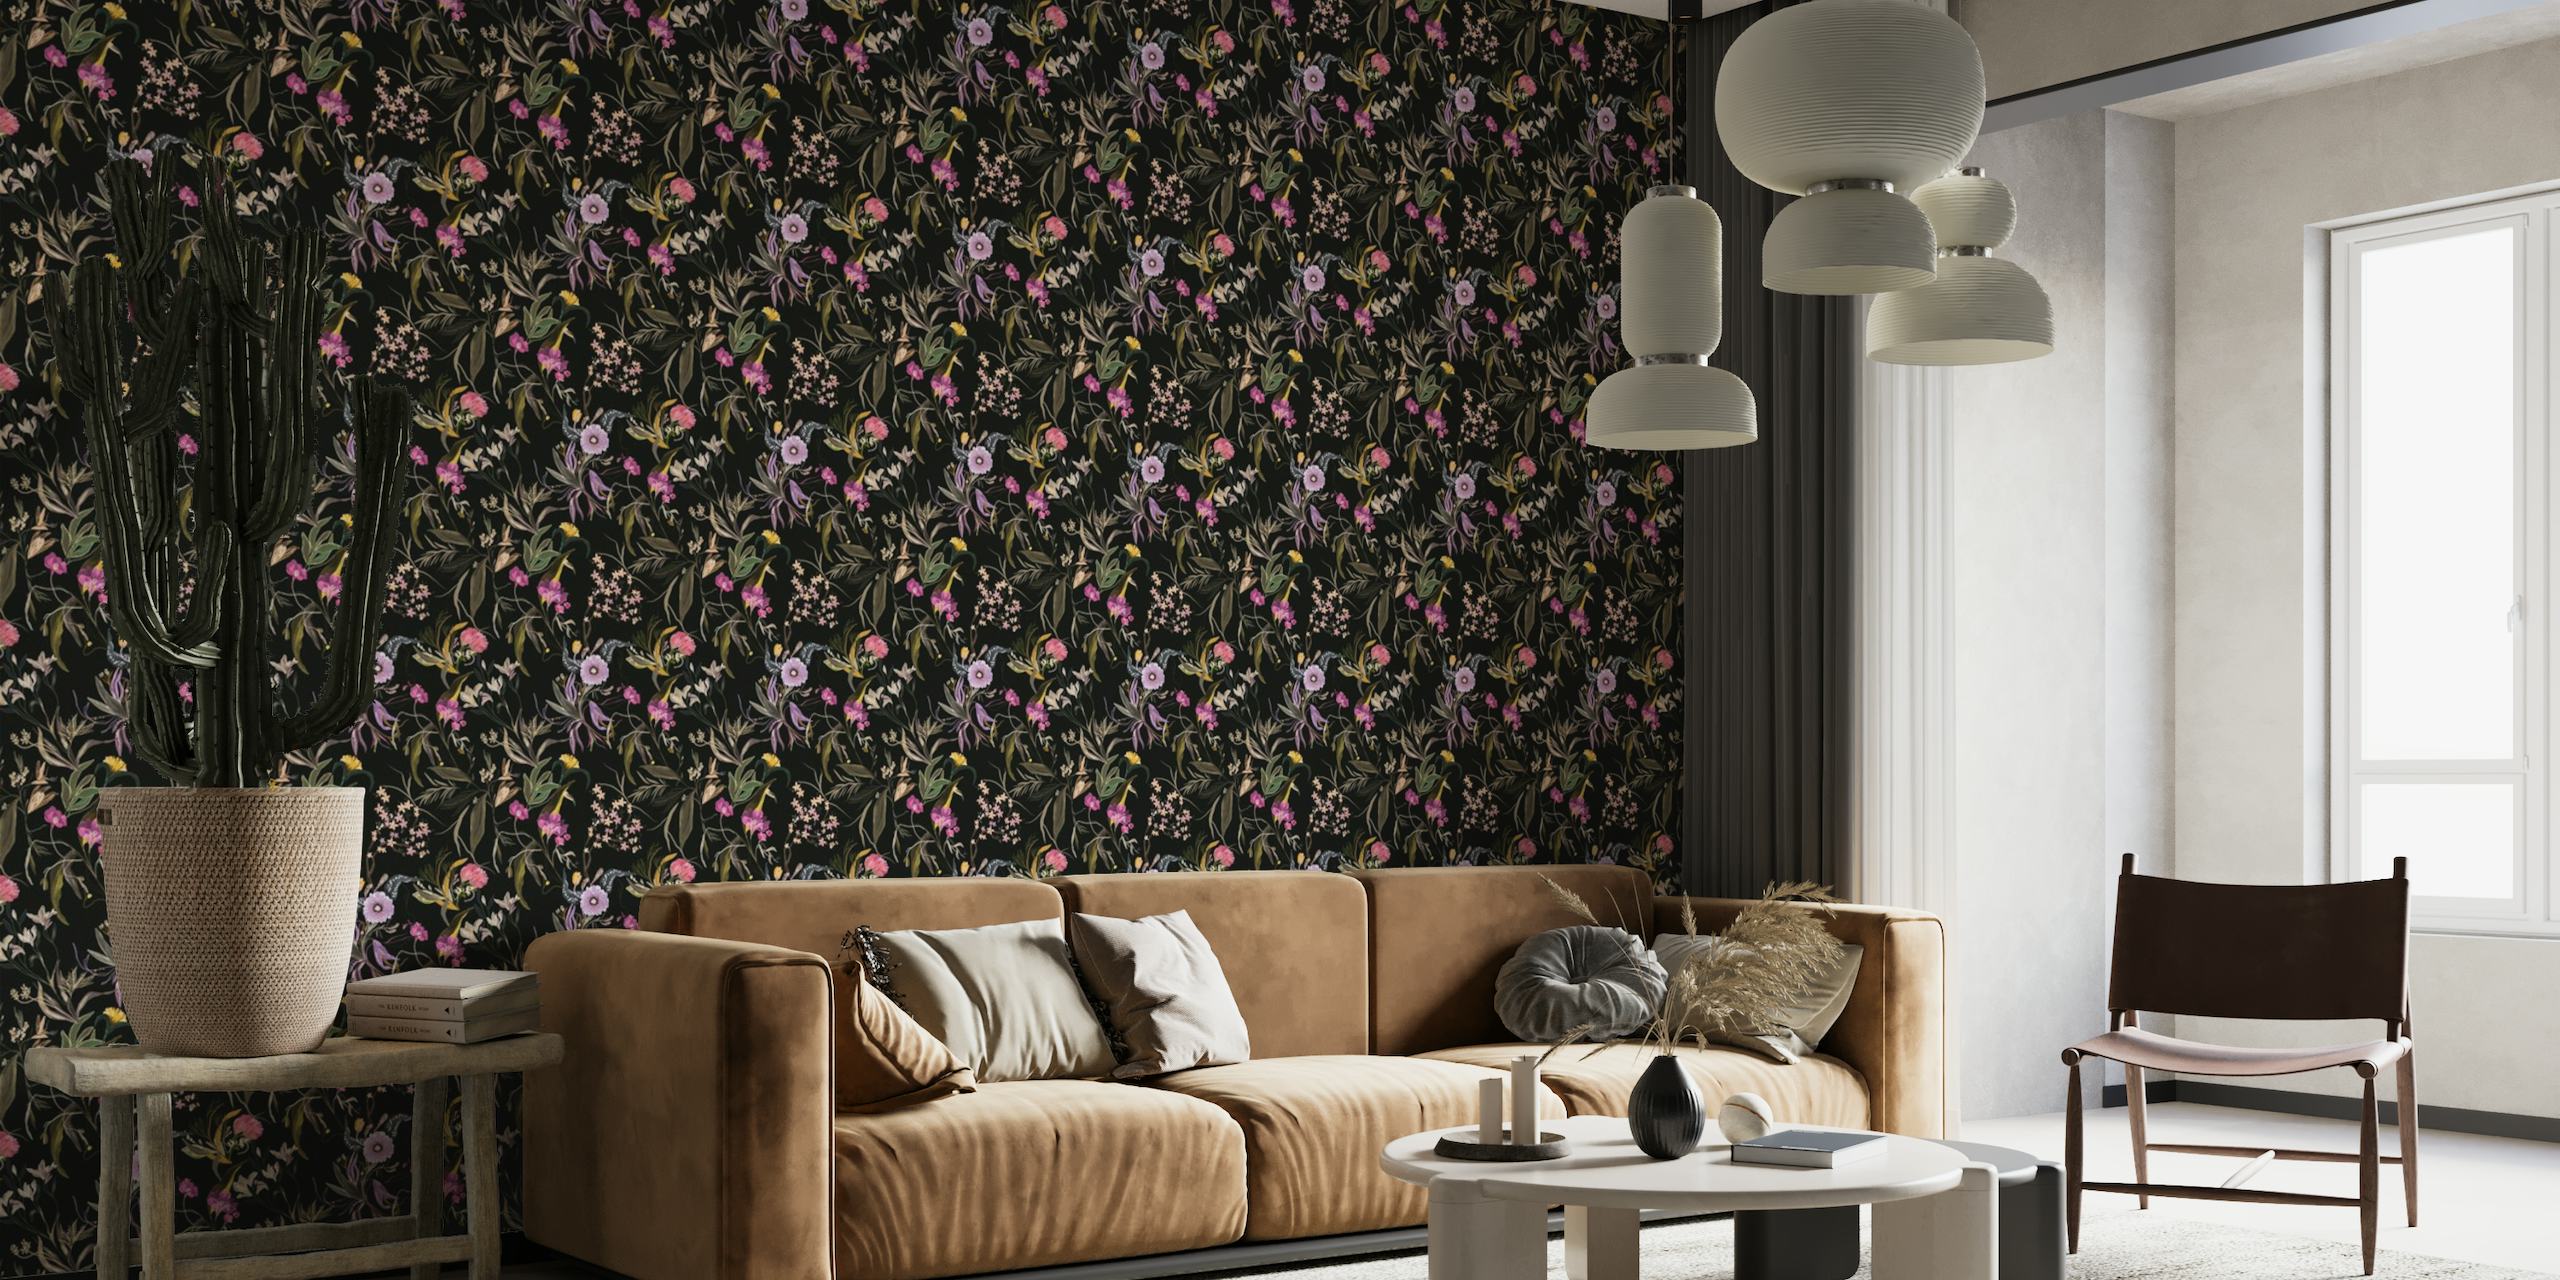 Fotomural vinílico de parede elegante com padrão floral românico com flores desabrochando e folhagens contra um fundo escuro